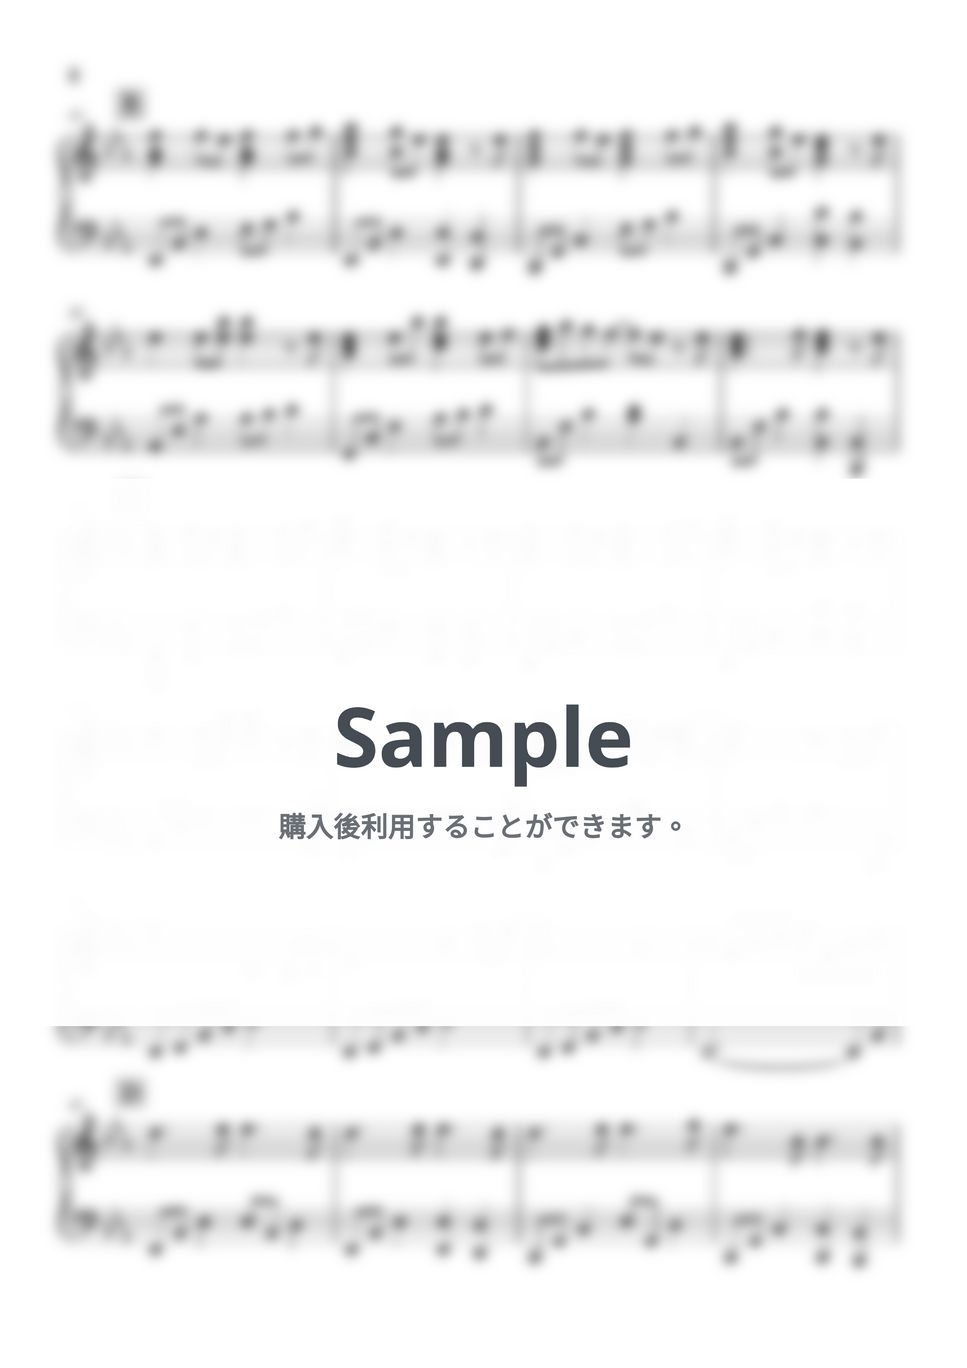 ラクス・クライン - Fields of hope (機動戦士ガンダム) by Piano Lovers. jp